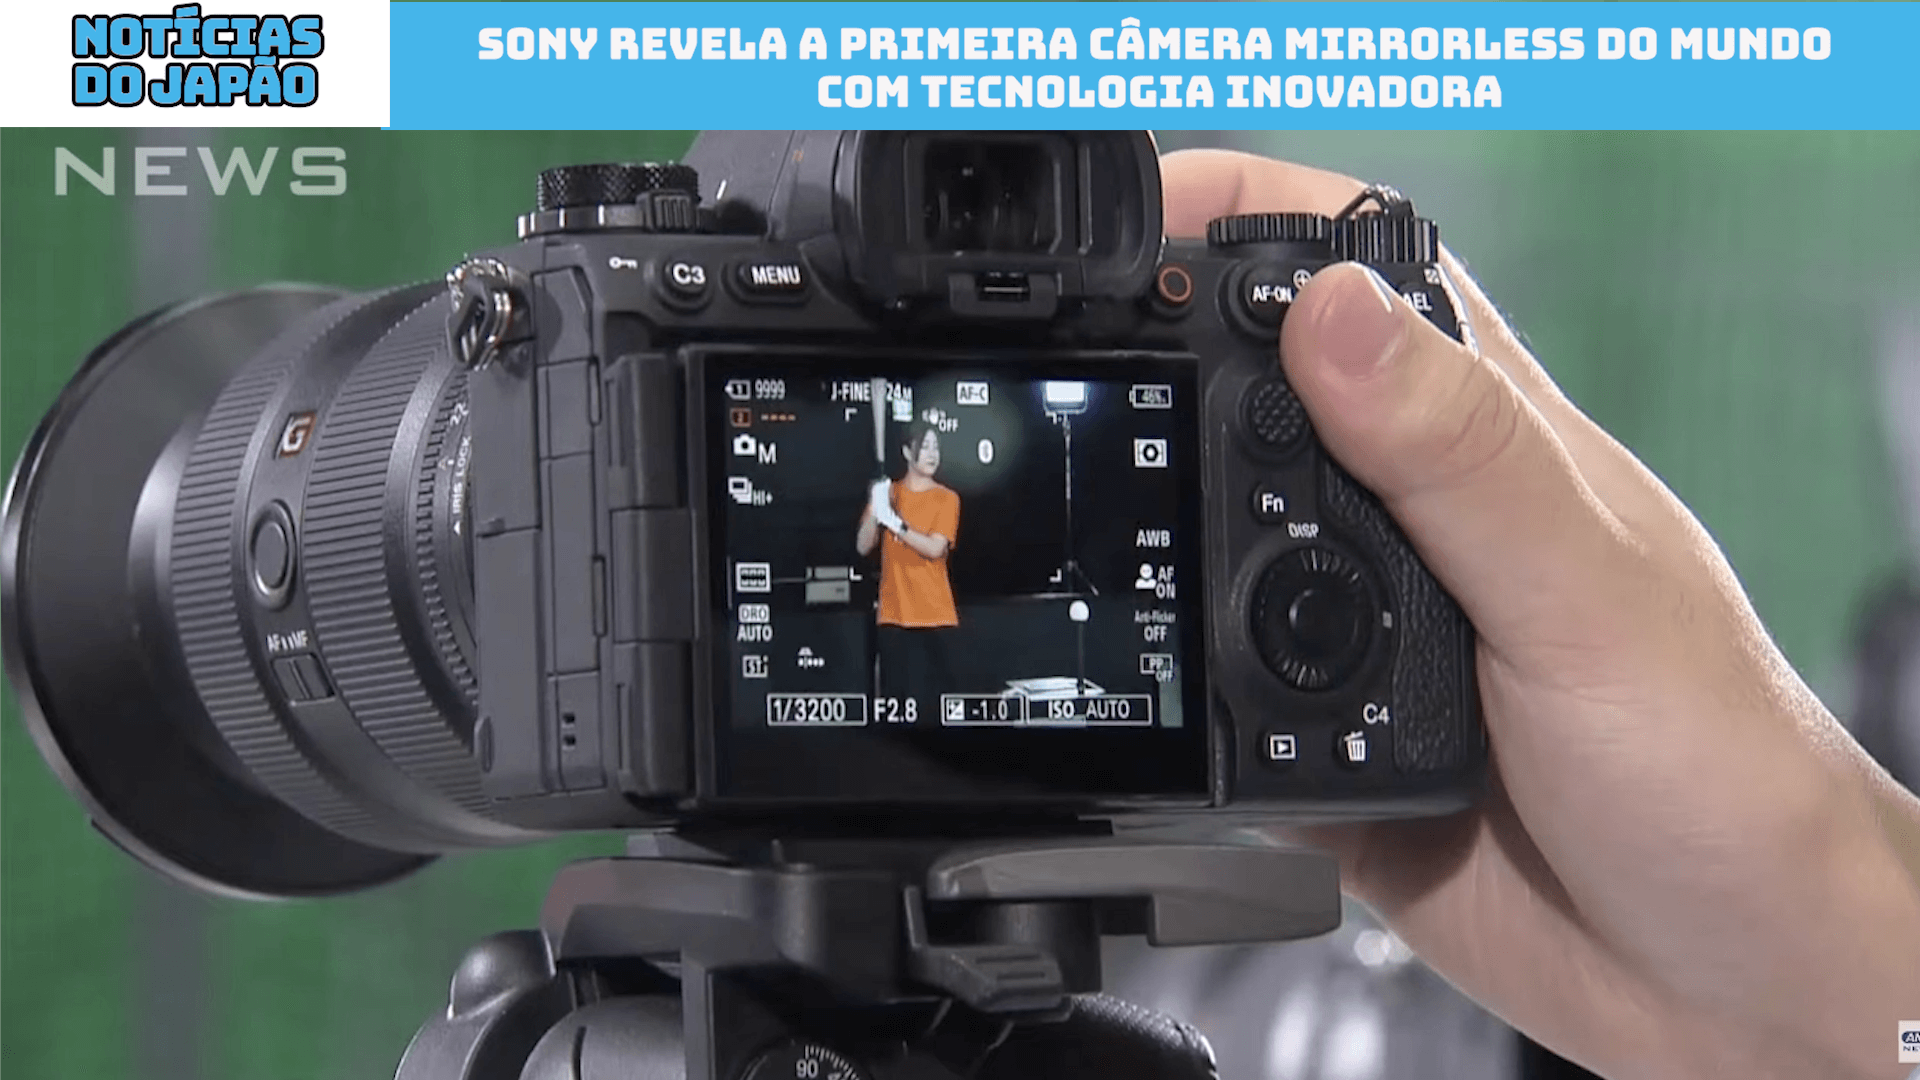 Sony revela a primeira câmera mirrorless do mundo com tecnologia inovadora